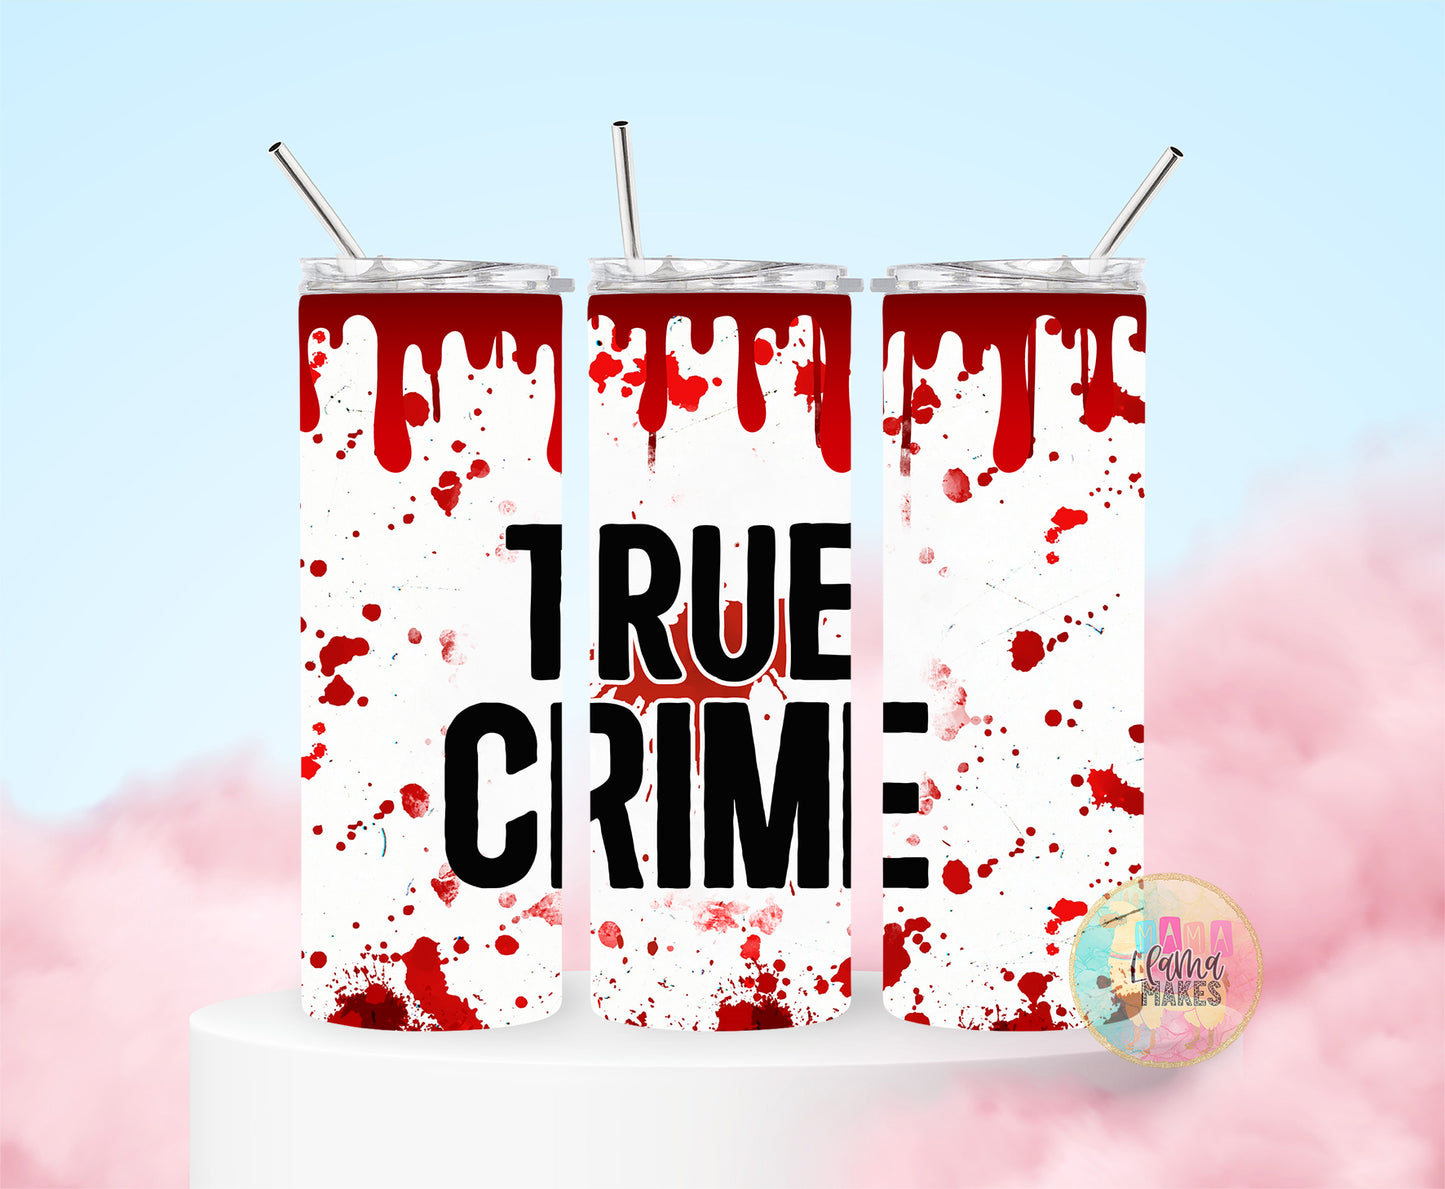 True crime